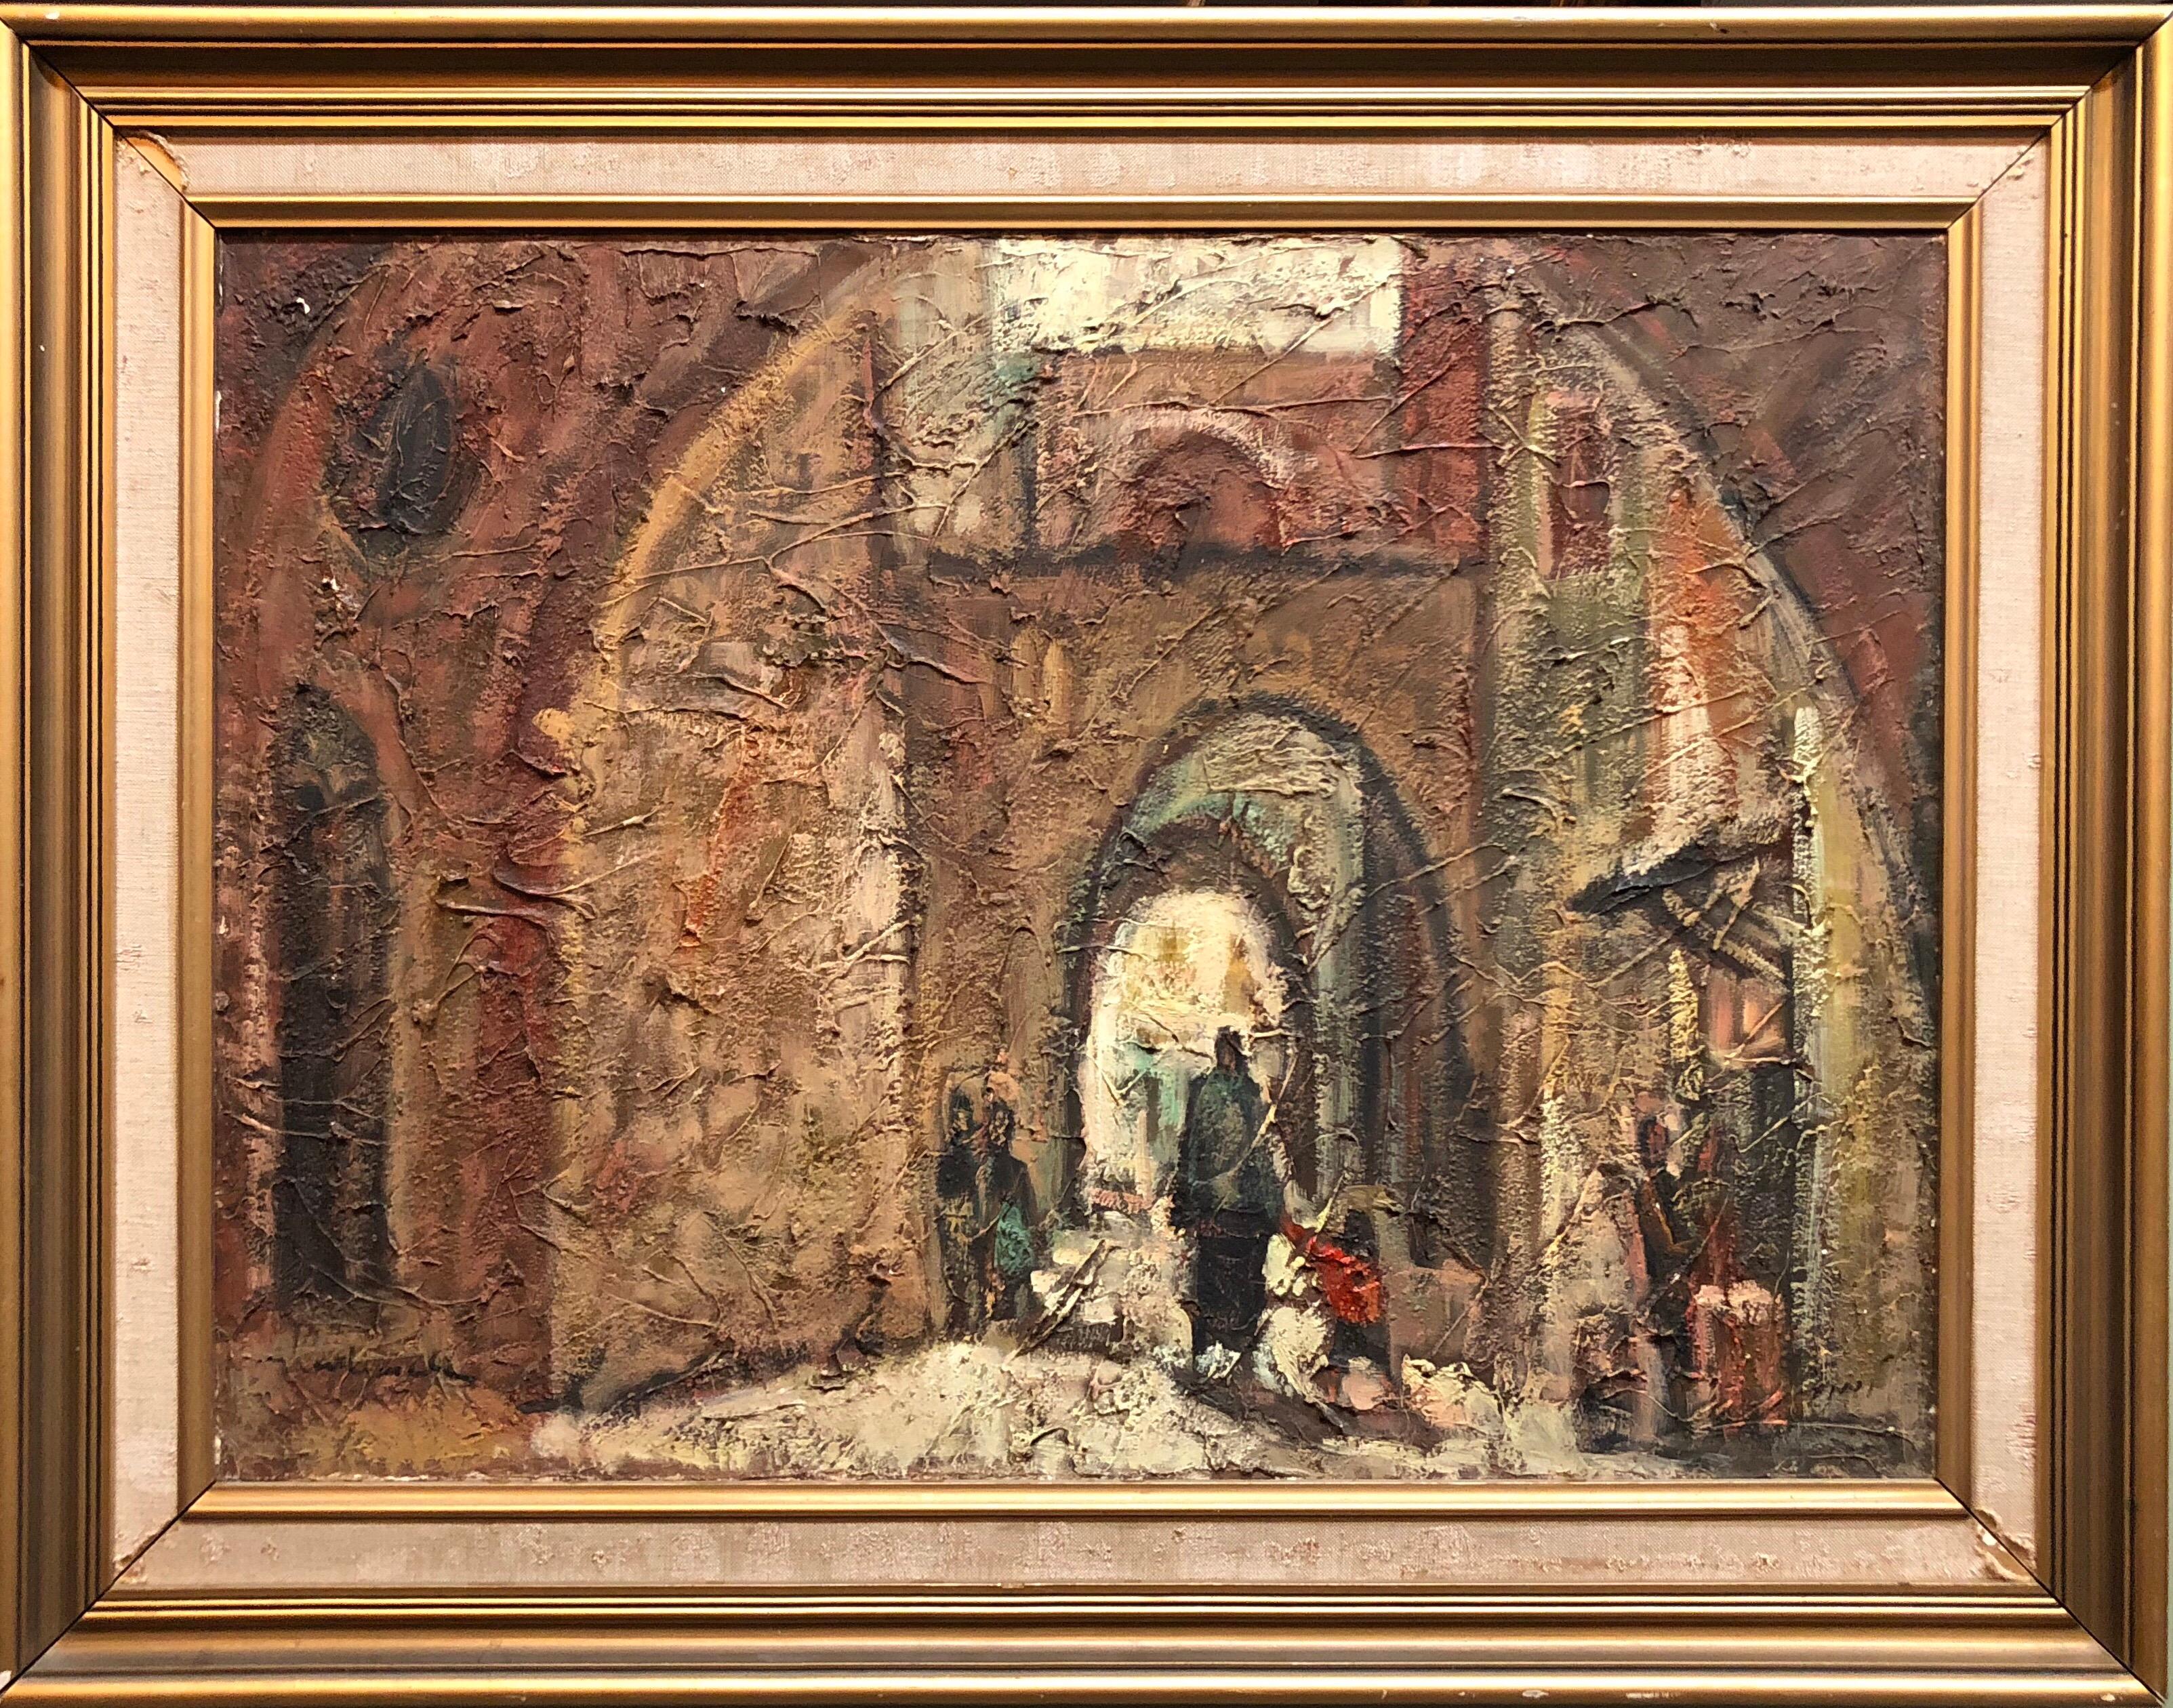 Landscape Painting Unknown - Peinture à l'huile moderniste israélienne de la vieille ville de Jérusalem, signée en hébreu